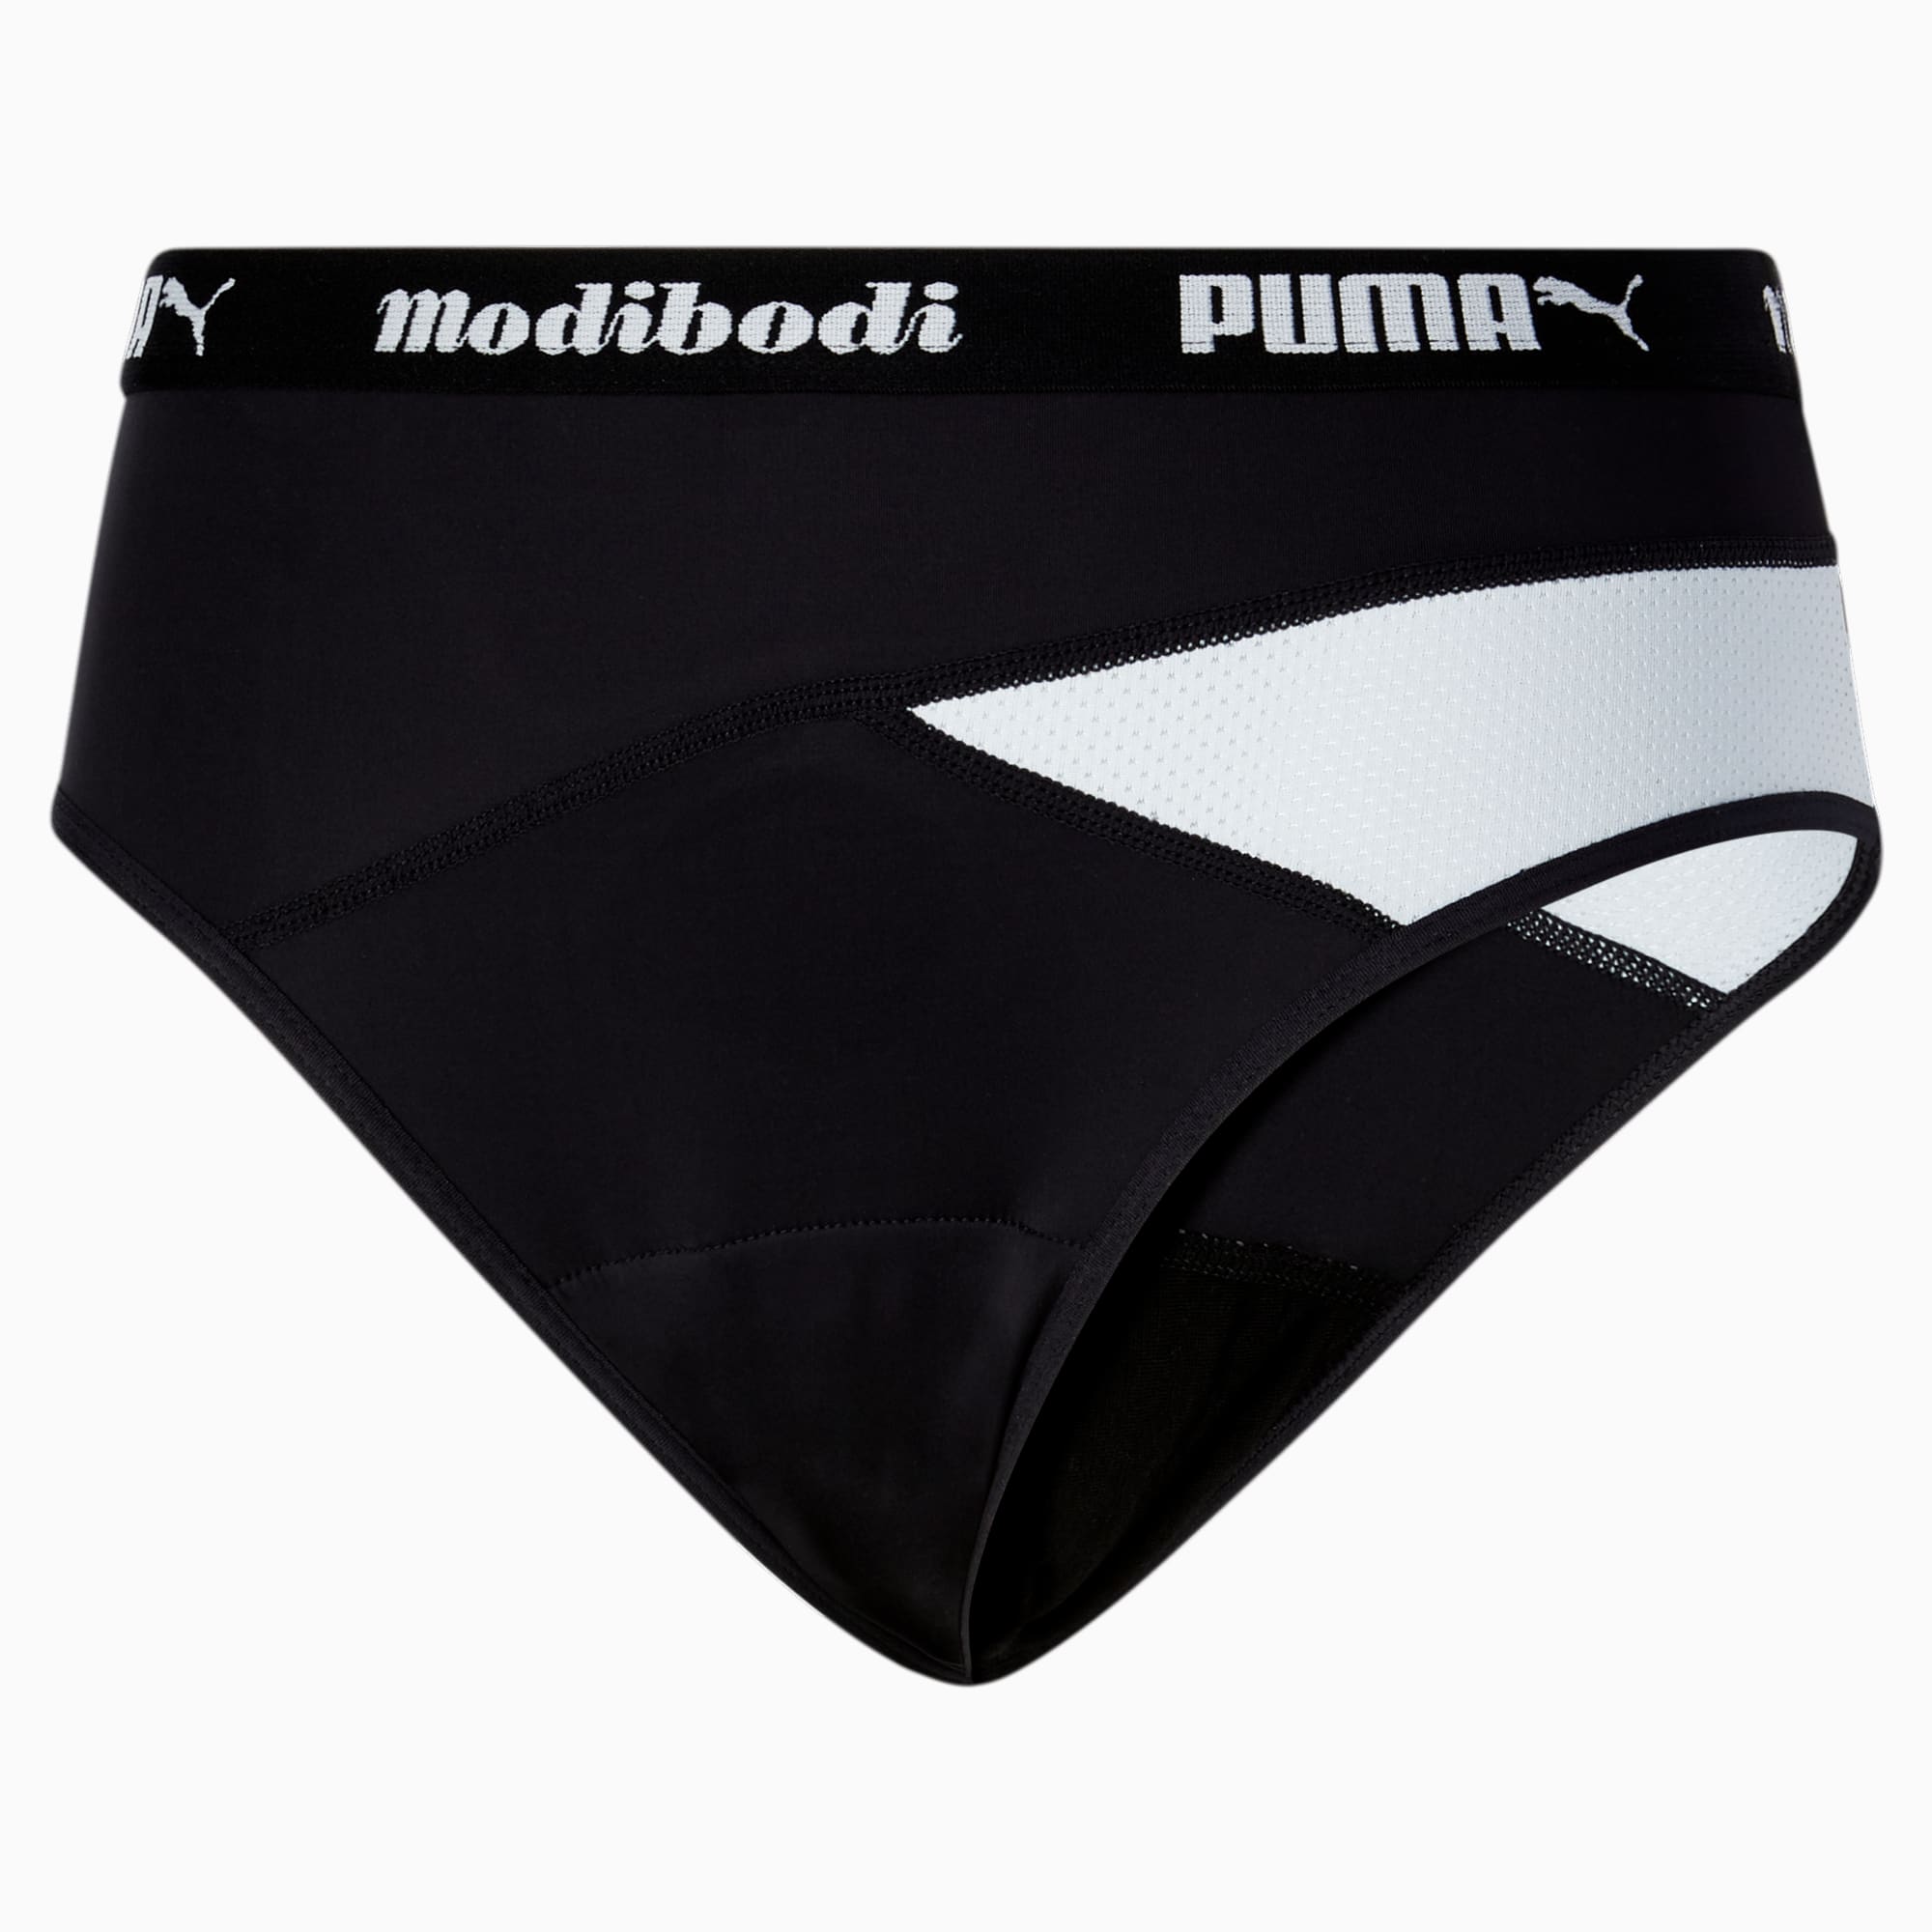 PUMA and Modibodi® Collaborate to Revolutionize Active Period Underwear